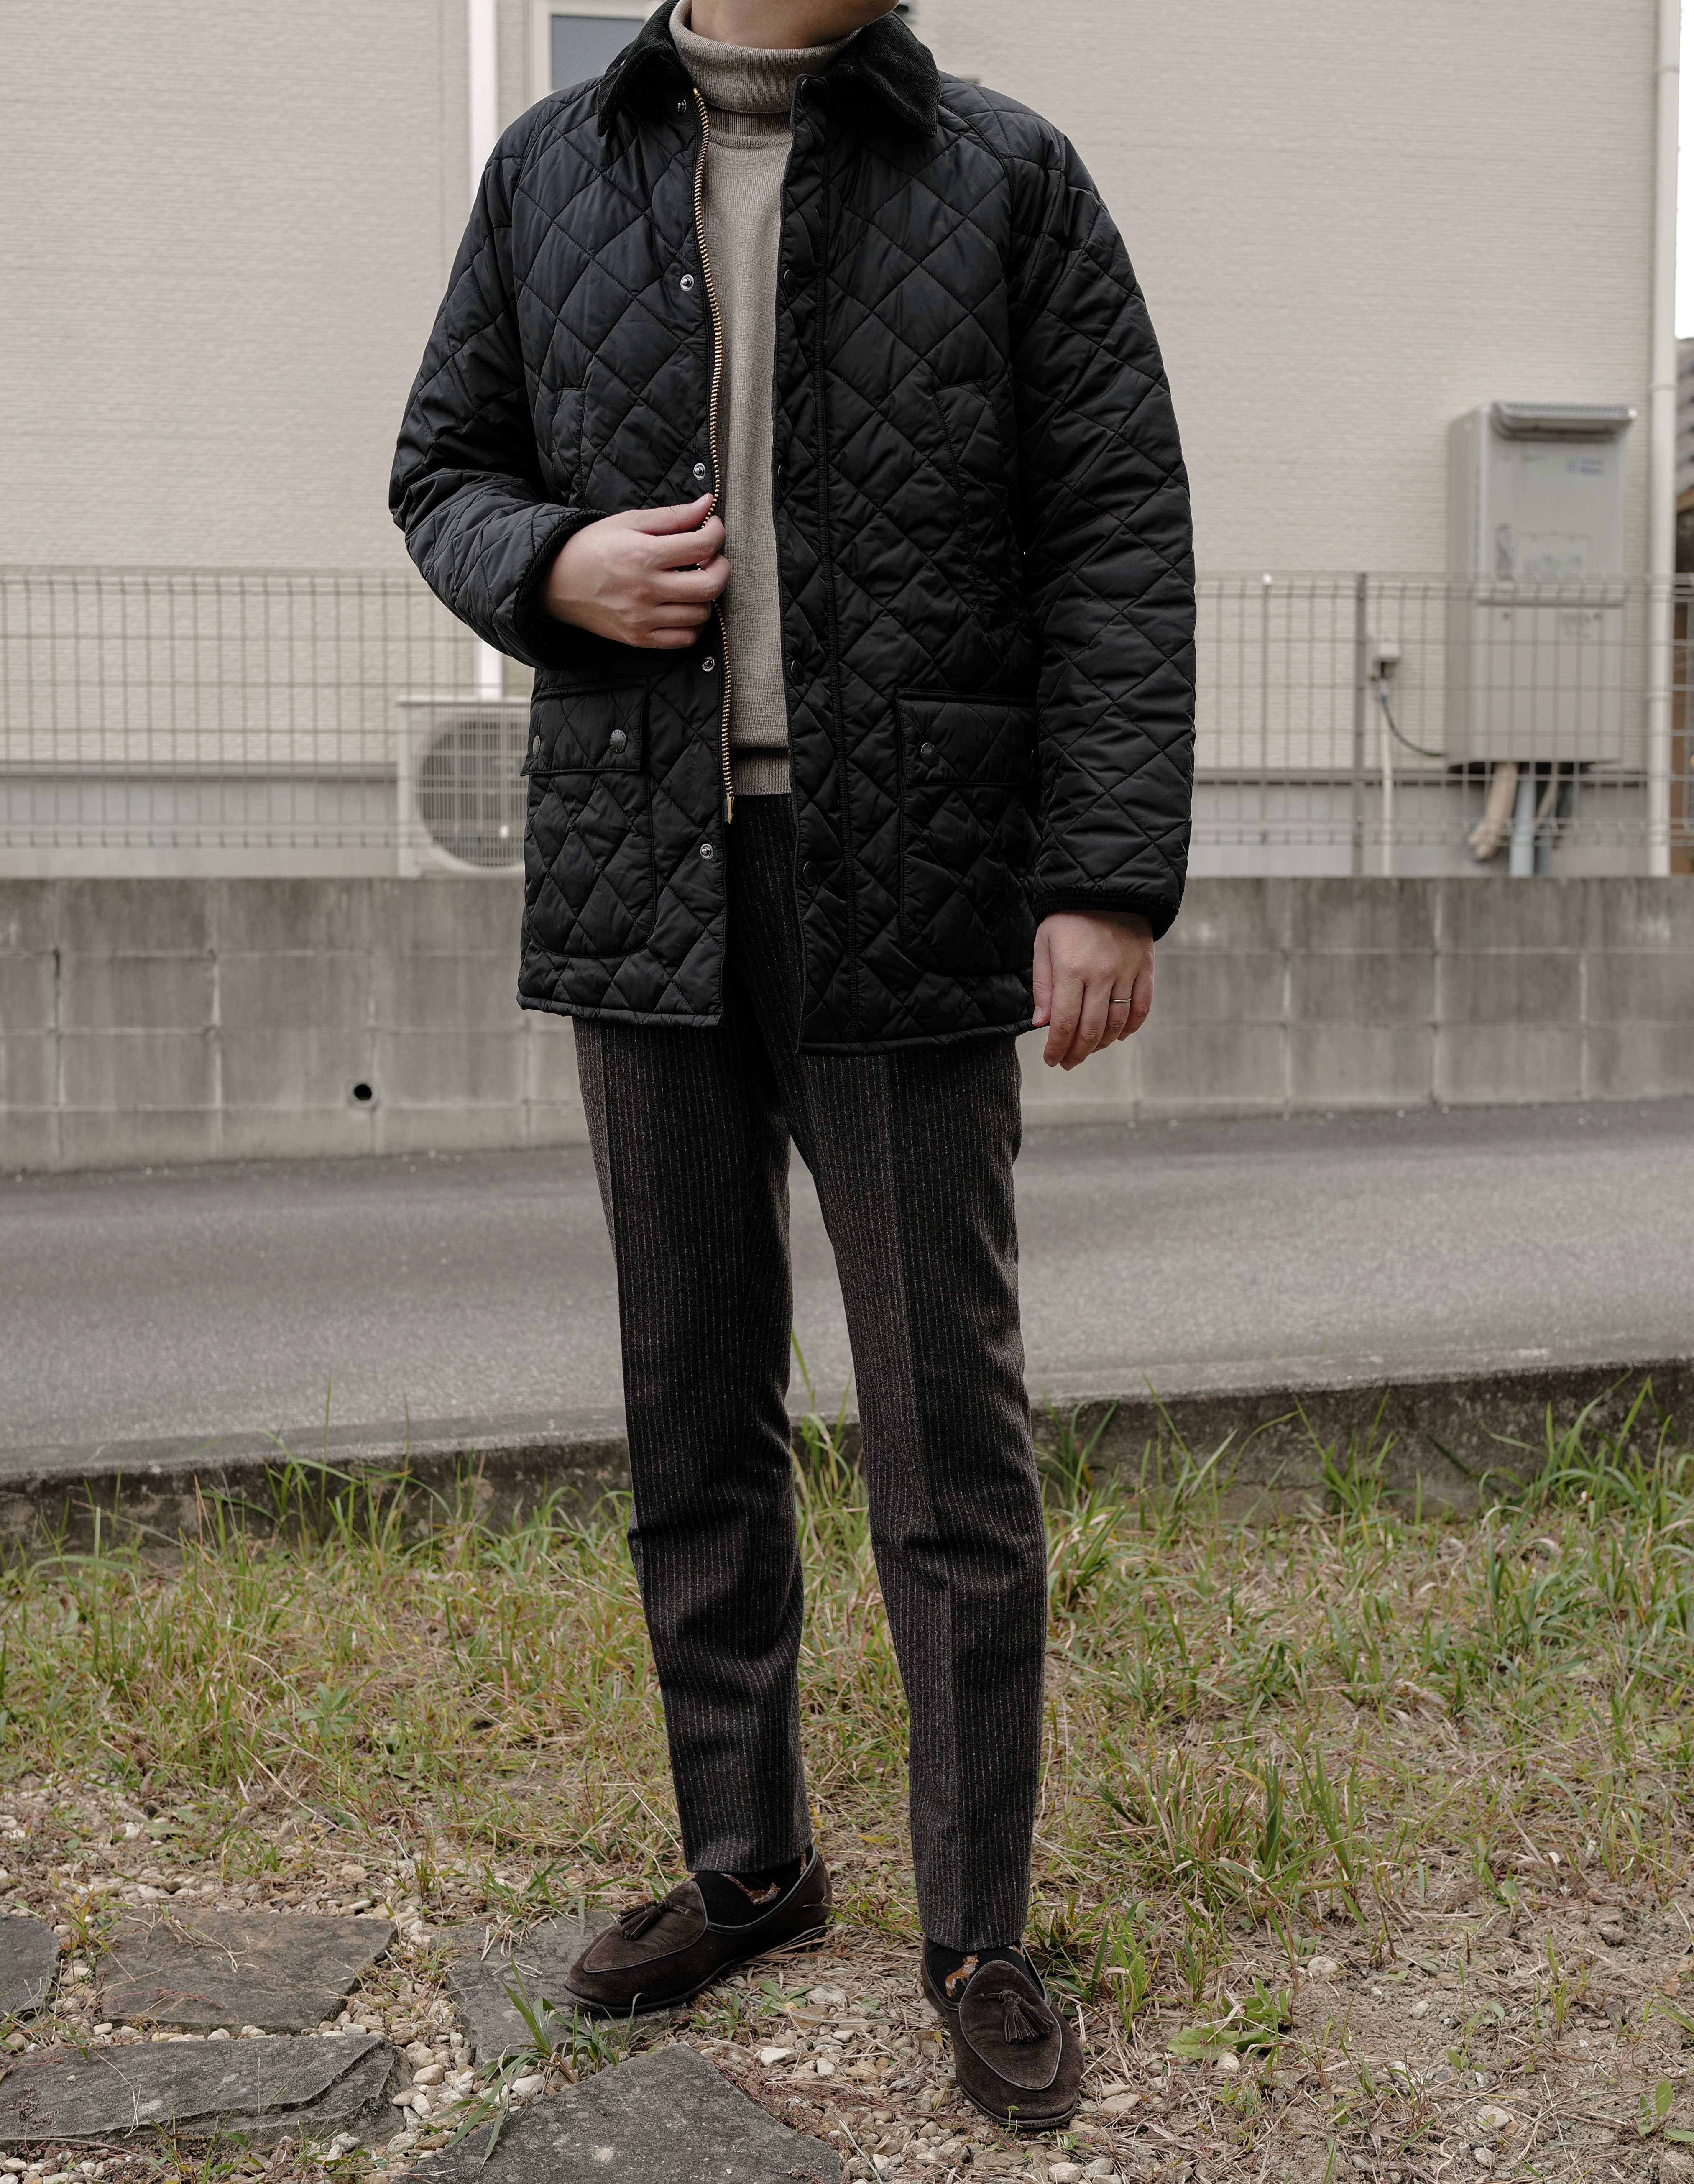 【希少】Barbour バブアー キルティングジャケット ブラック Lサイズ